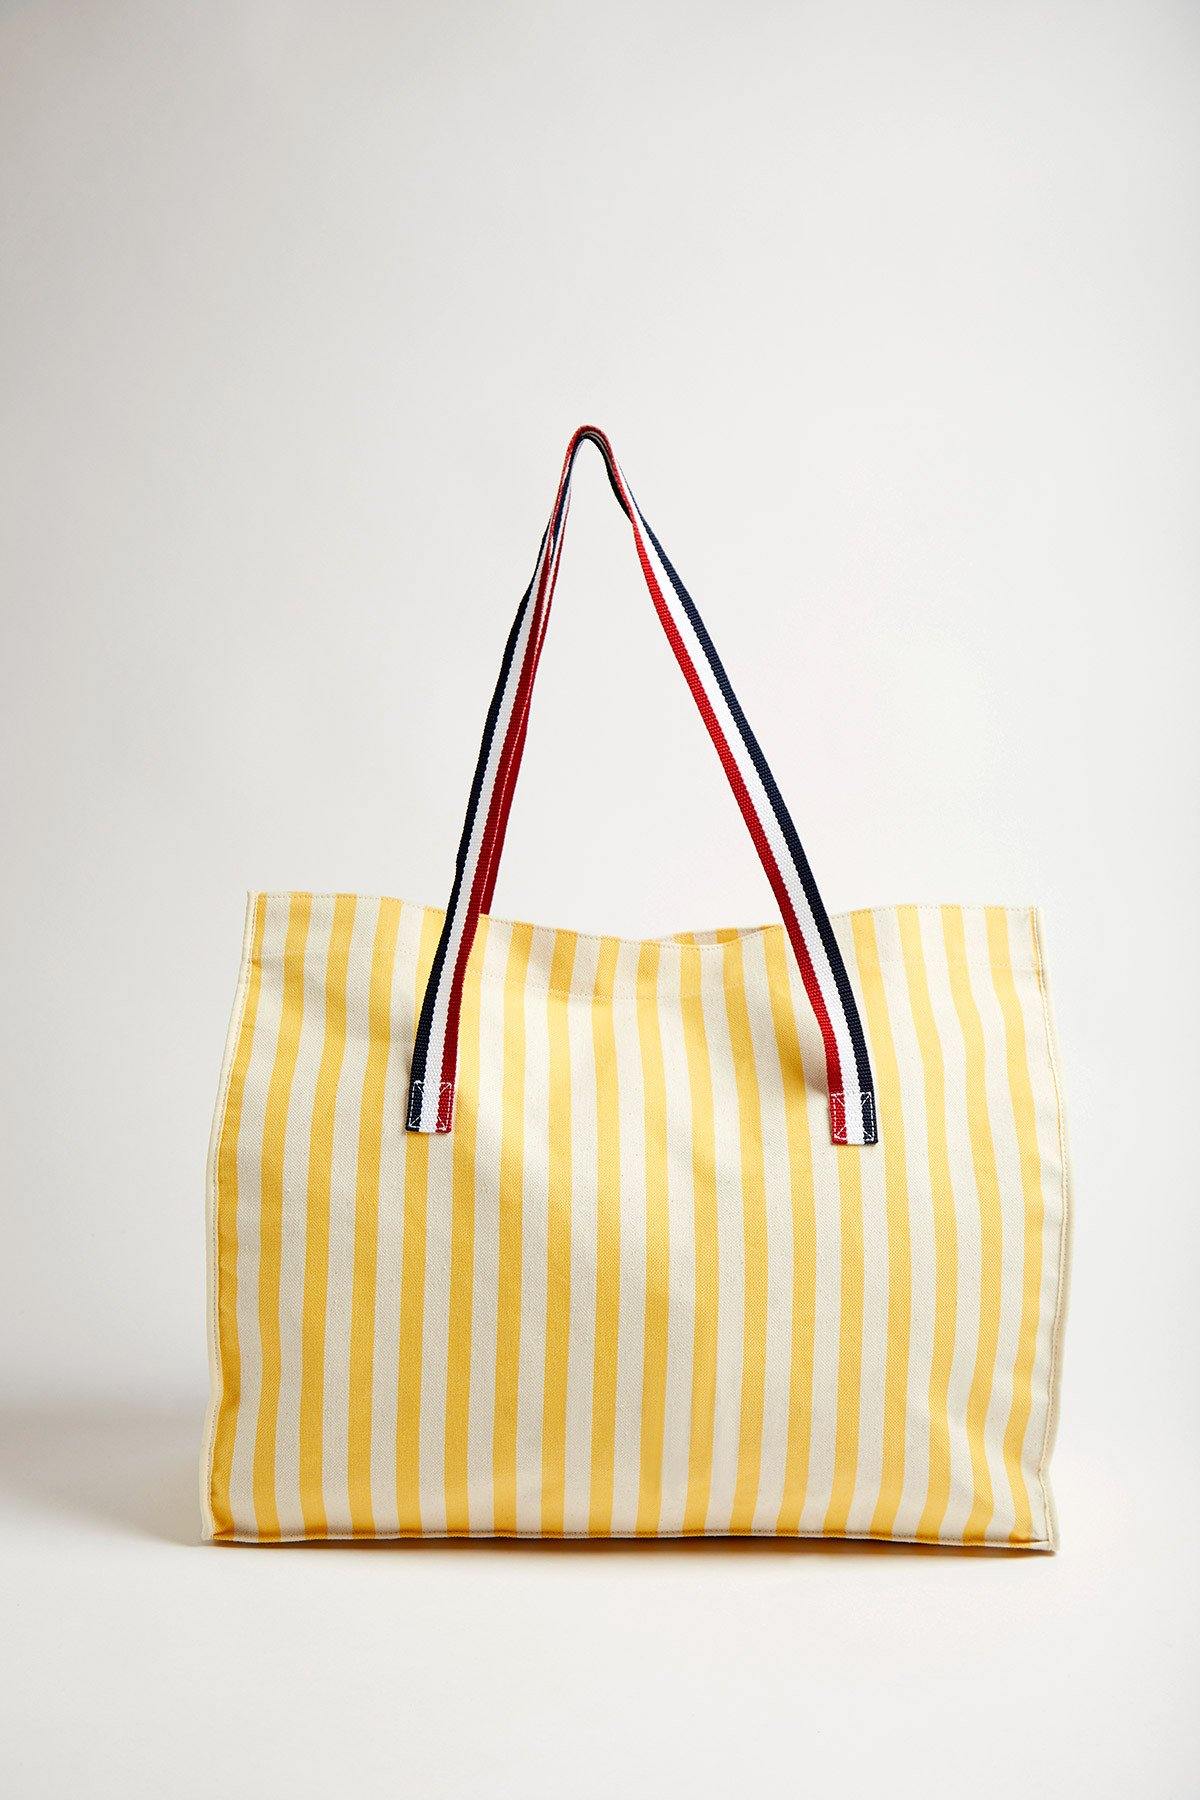 Elegante Designer Strandtasche | gelb weiss gestreift - 1789 CALA